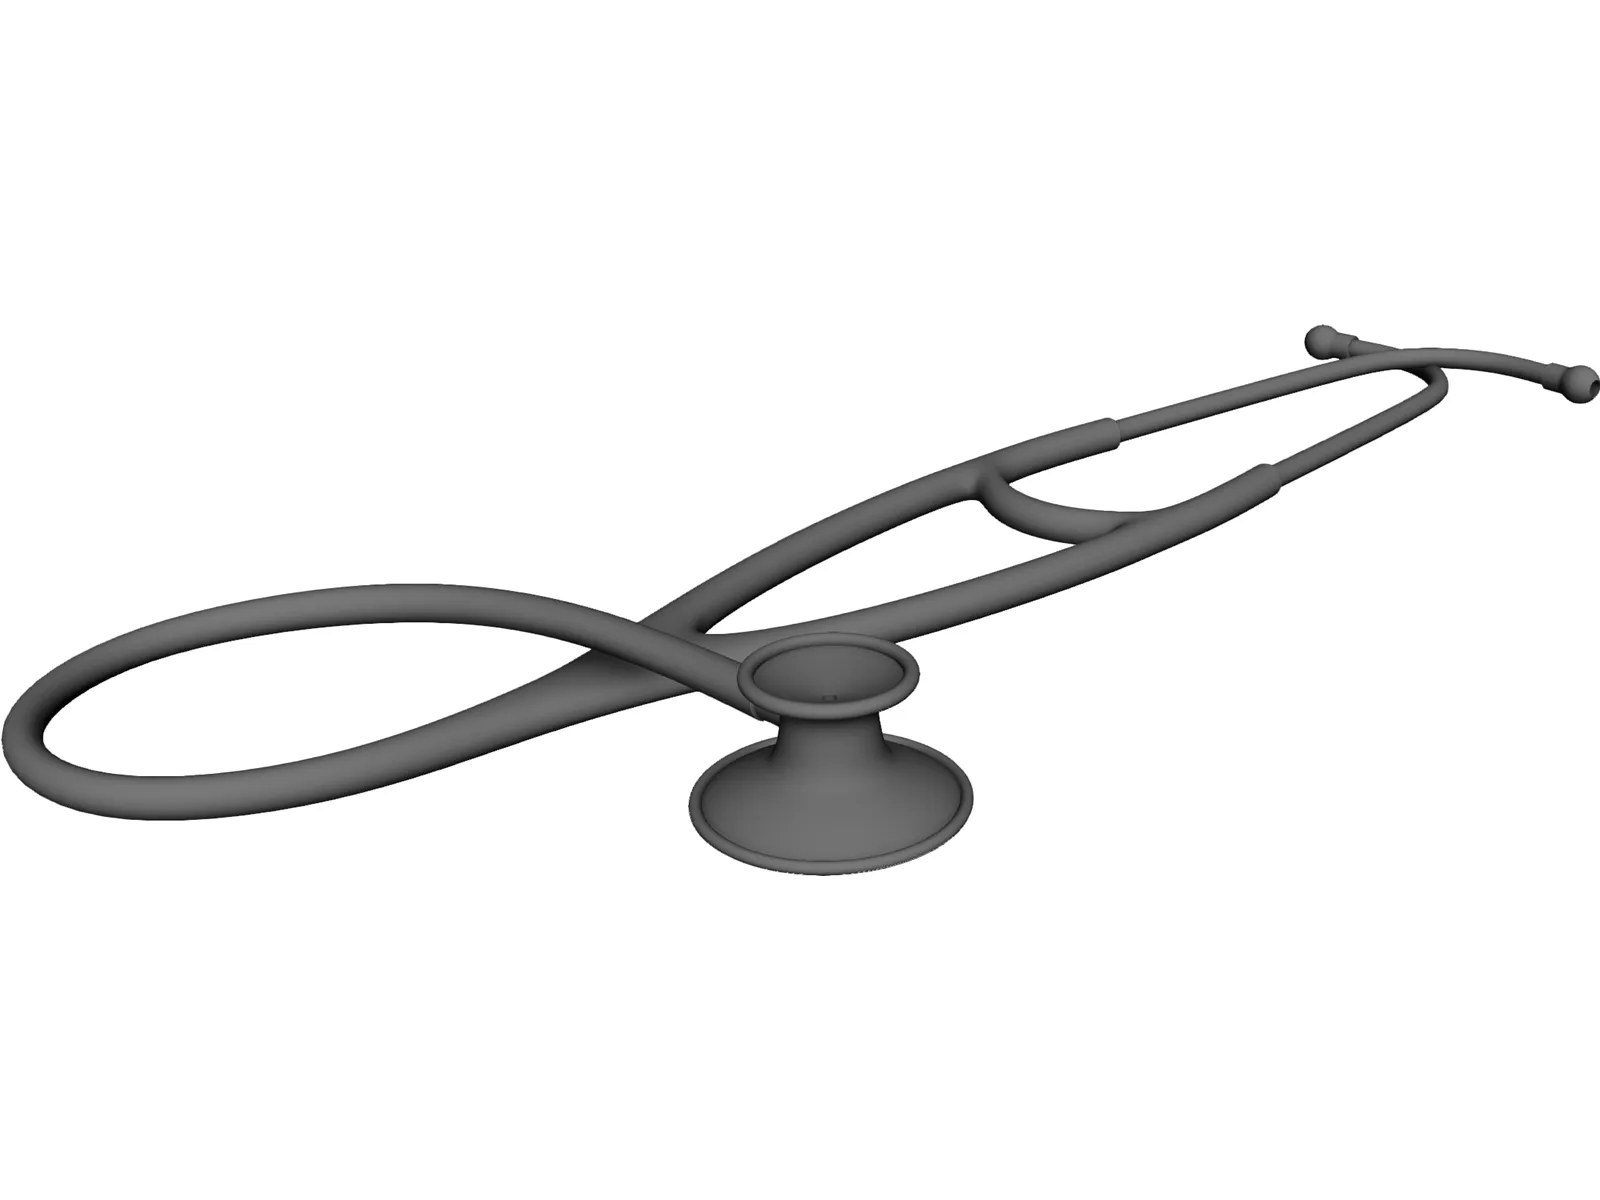 Stethoscope 3D Model